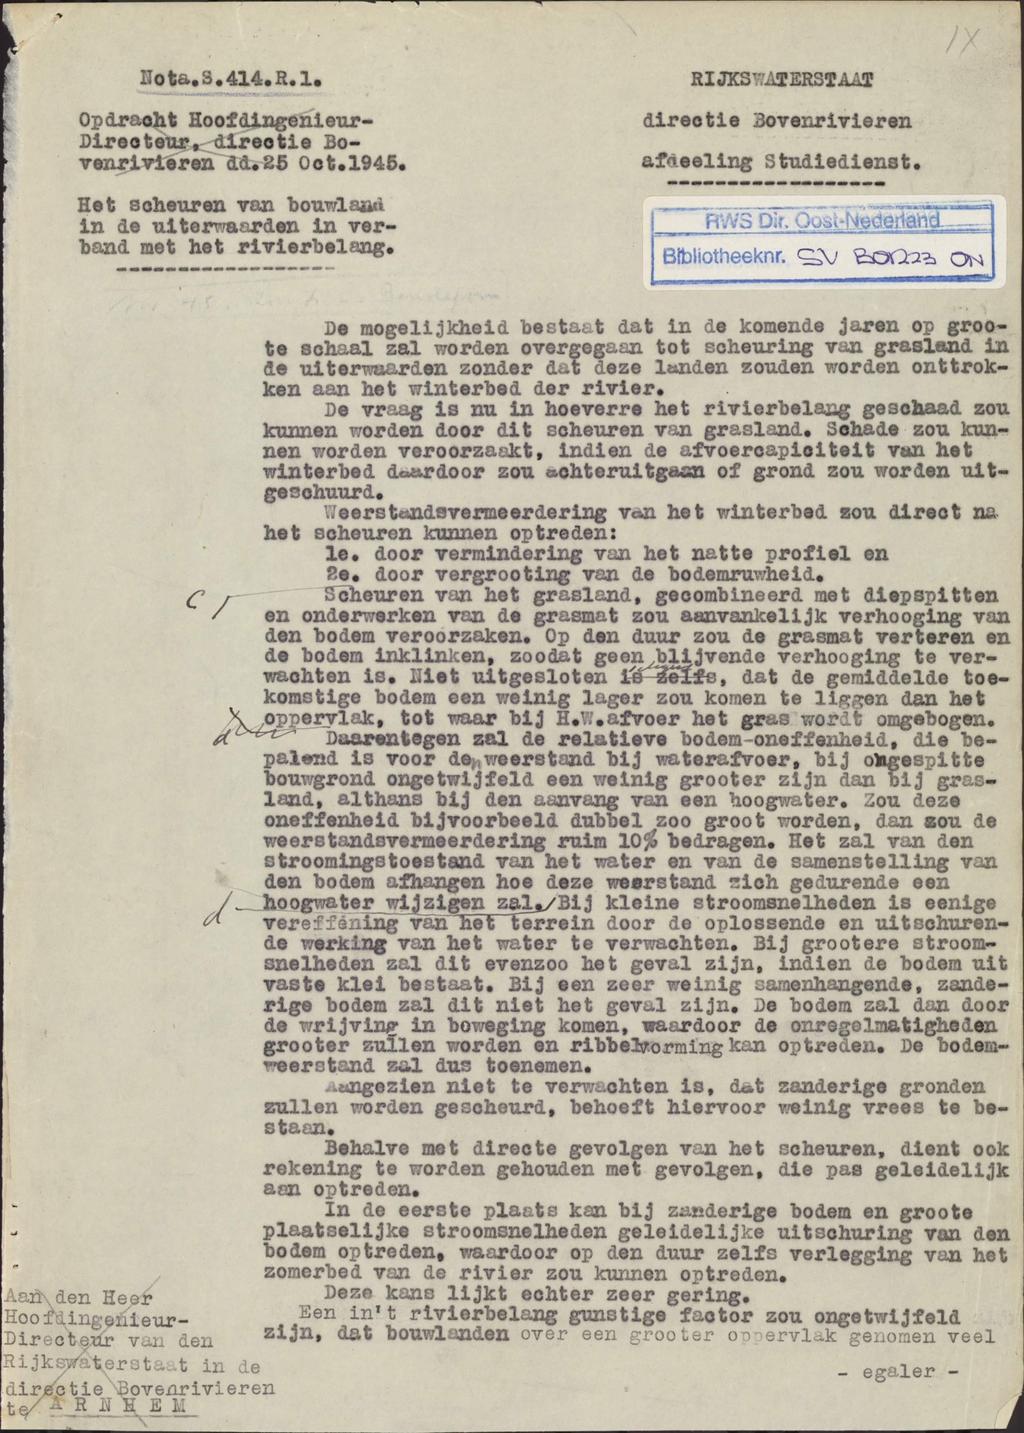 IIota.3.414.R.l. Opdracht Hoofdingenieur- Directeur, directie Bovenrivleren dd,25 Oct.1945. RIJKS ".